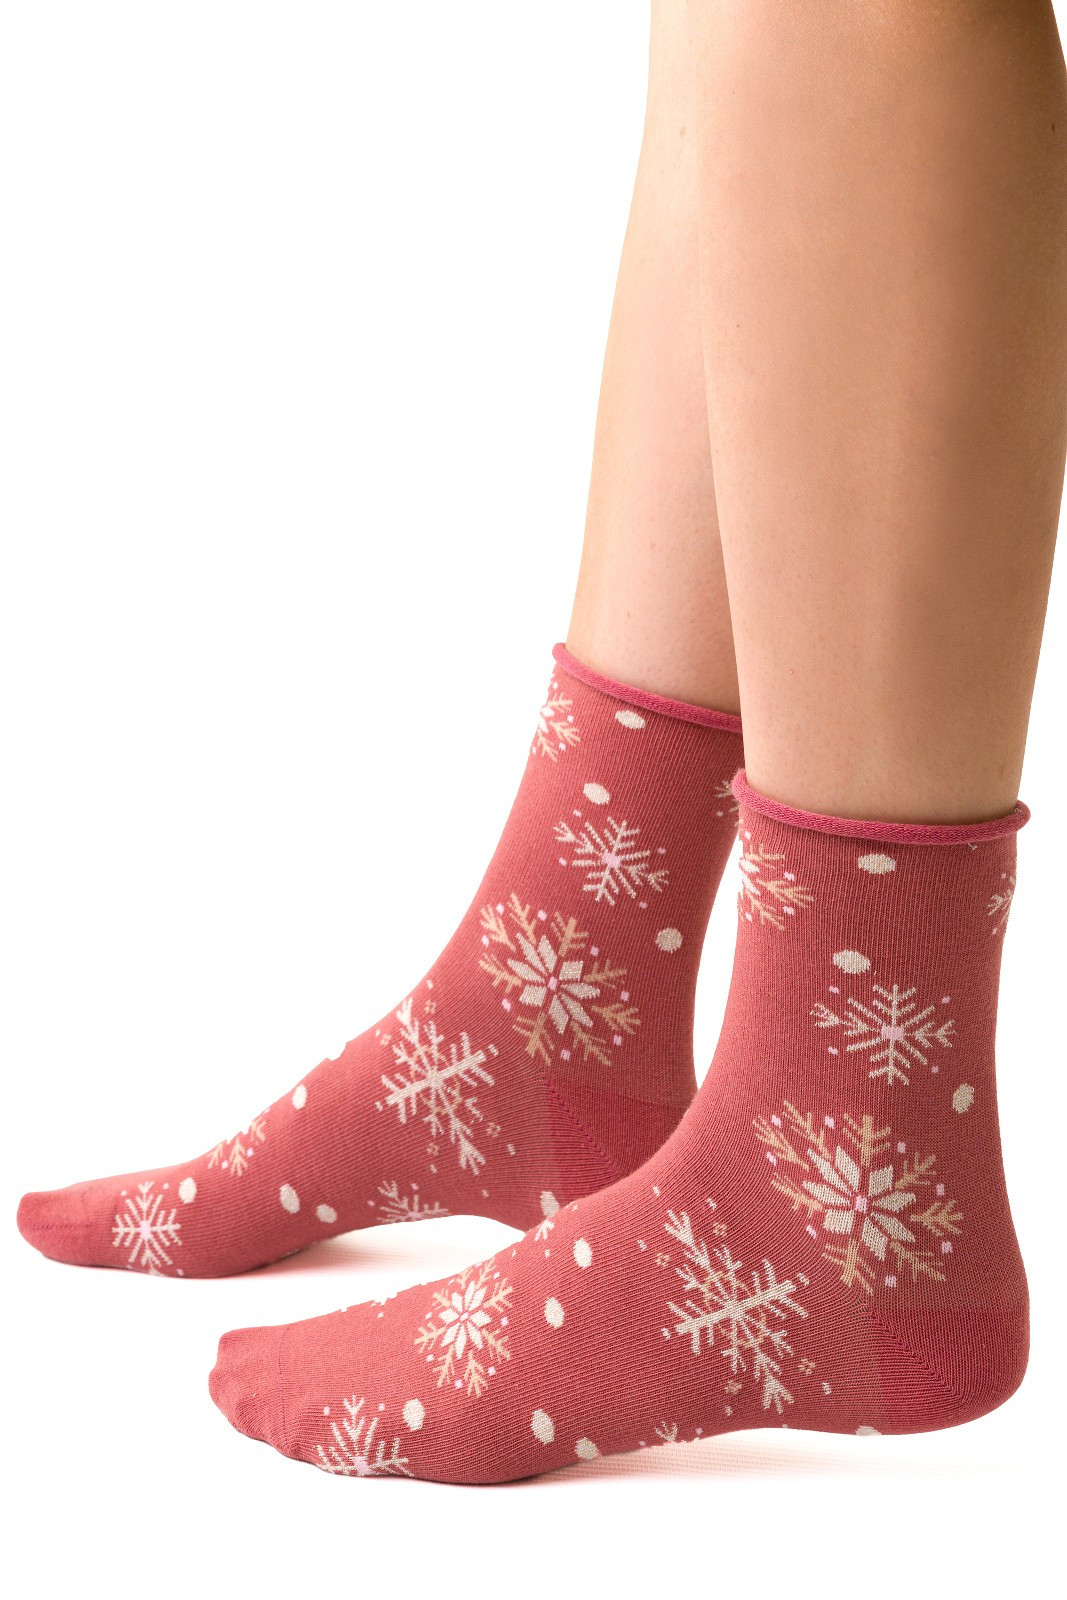 Dámské zimní netlačící ponožky Steven art.099 Vzor 35-40 melanžová šedá/lurex 38-40